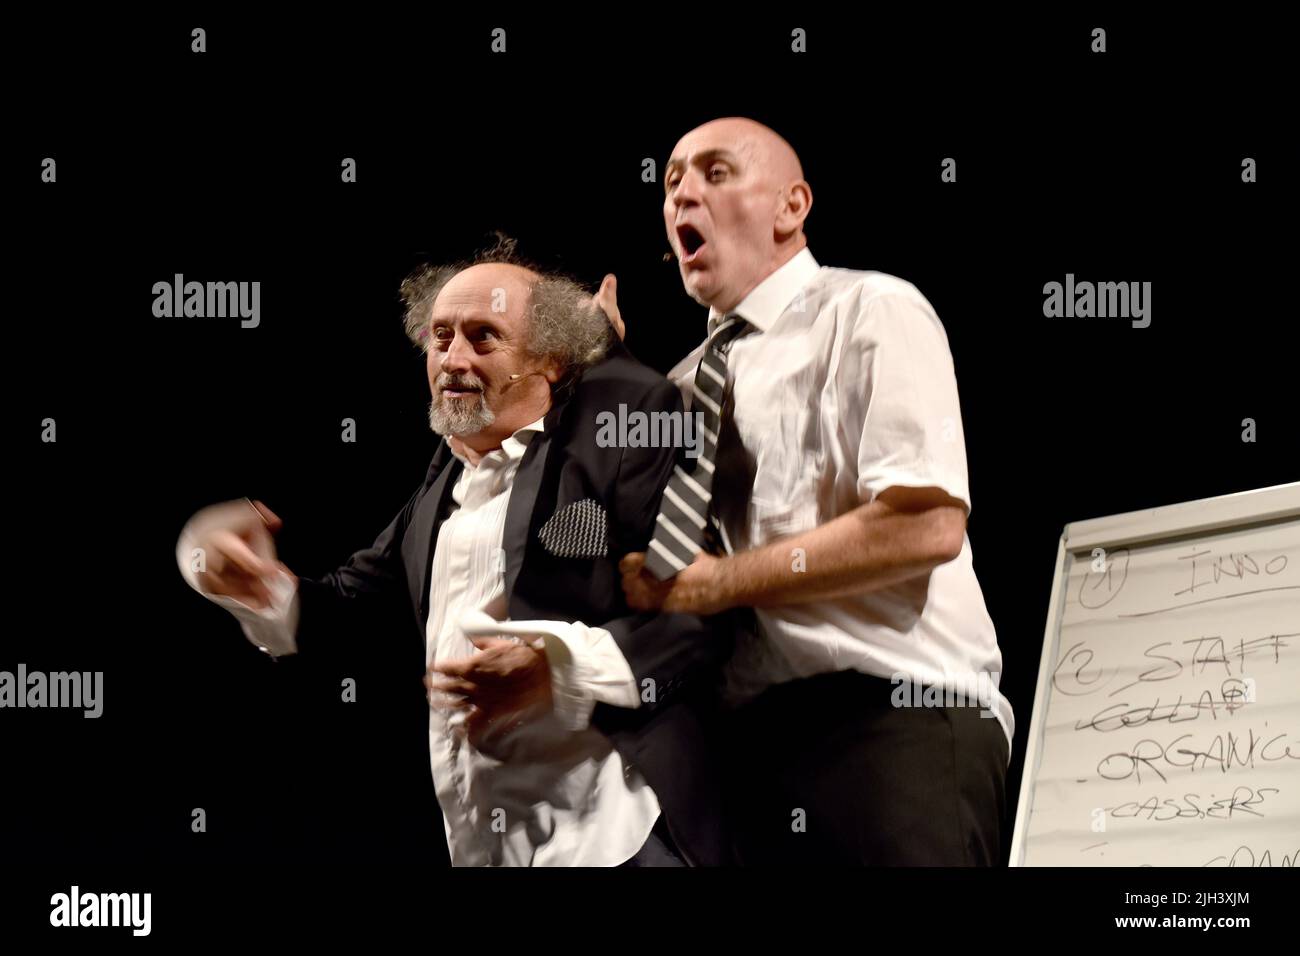 Spettacolo al Teatro Busca di Alba con Stefano Cornacchione y Sergio Sgrilli Foto de stock